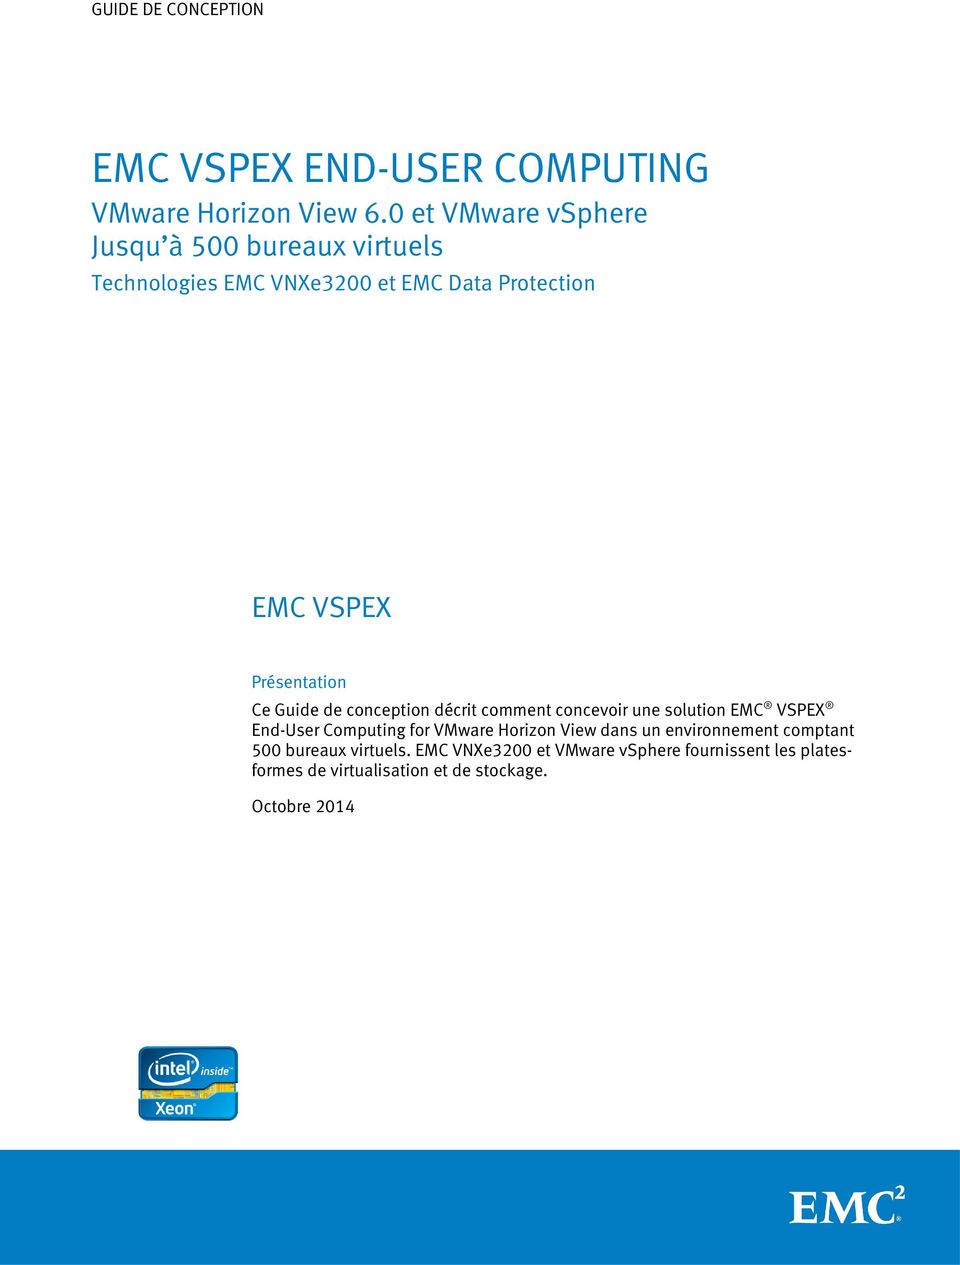 Présentation Ce décrit comment concevoir une solution EMC VSPEX End-User Computing for VMware Horizon View dans